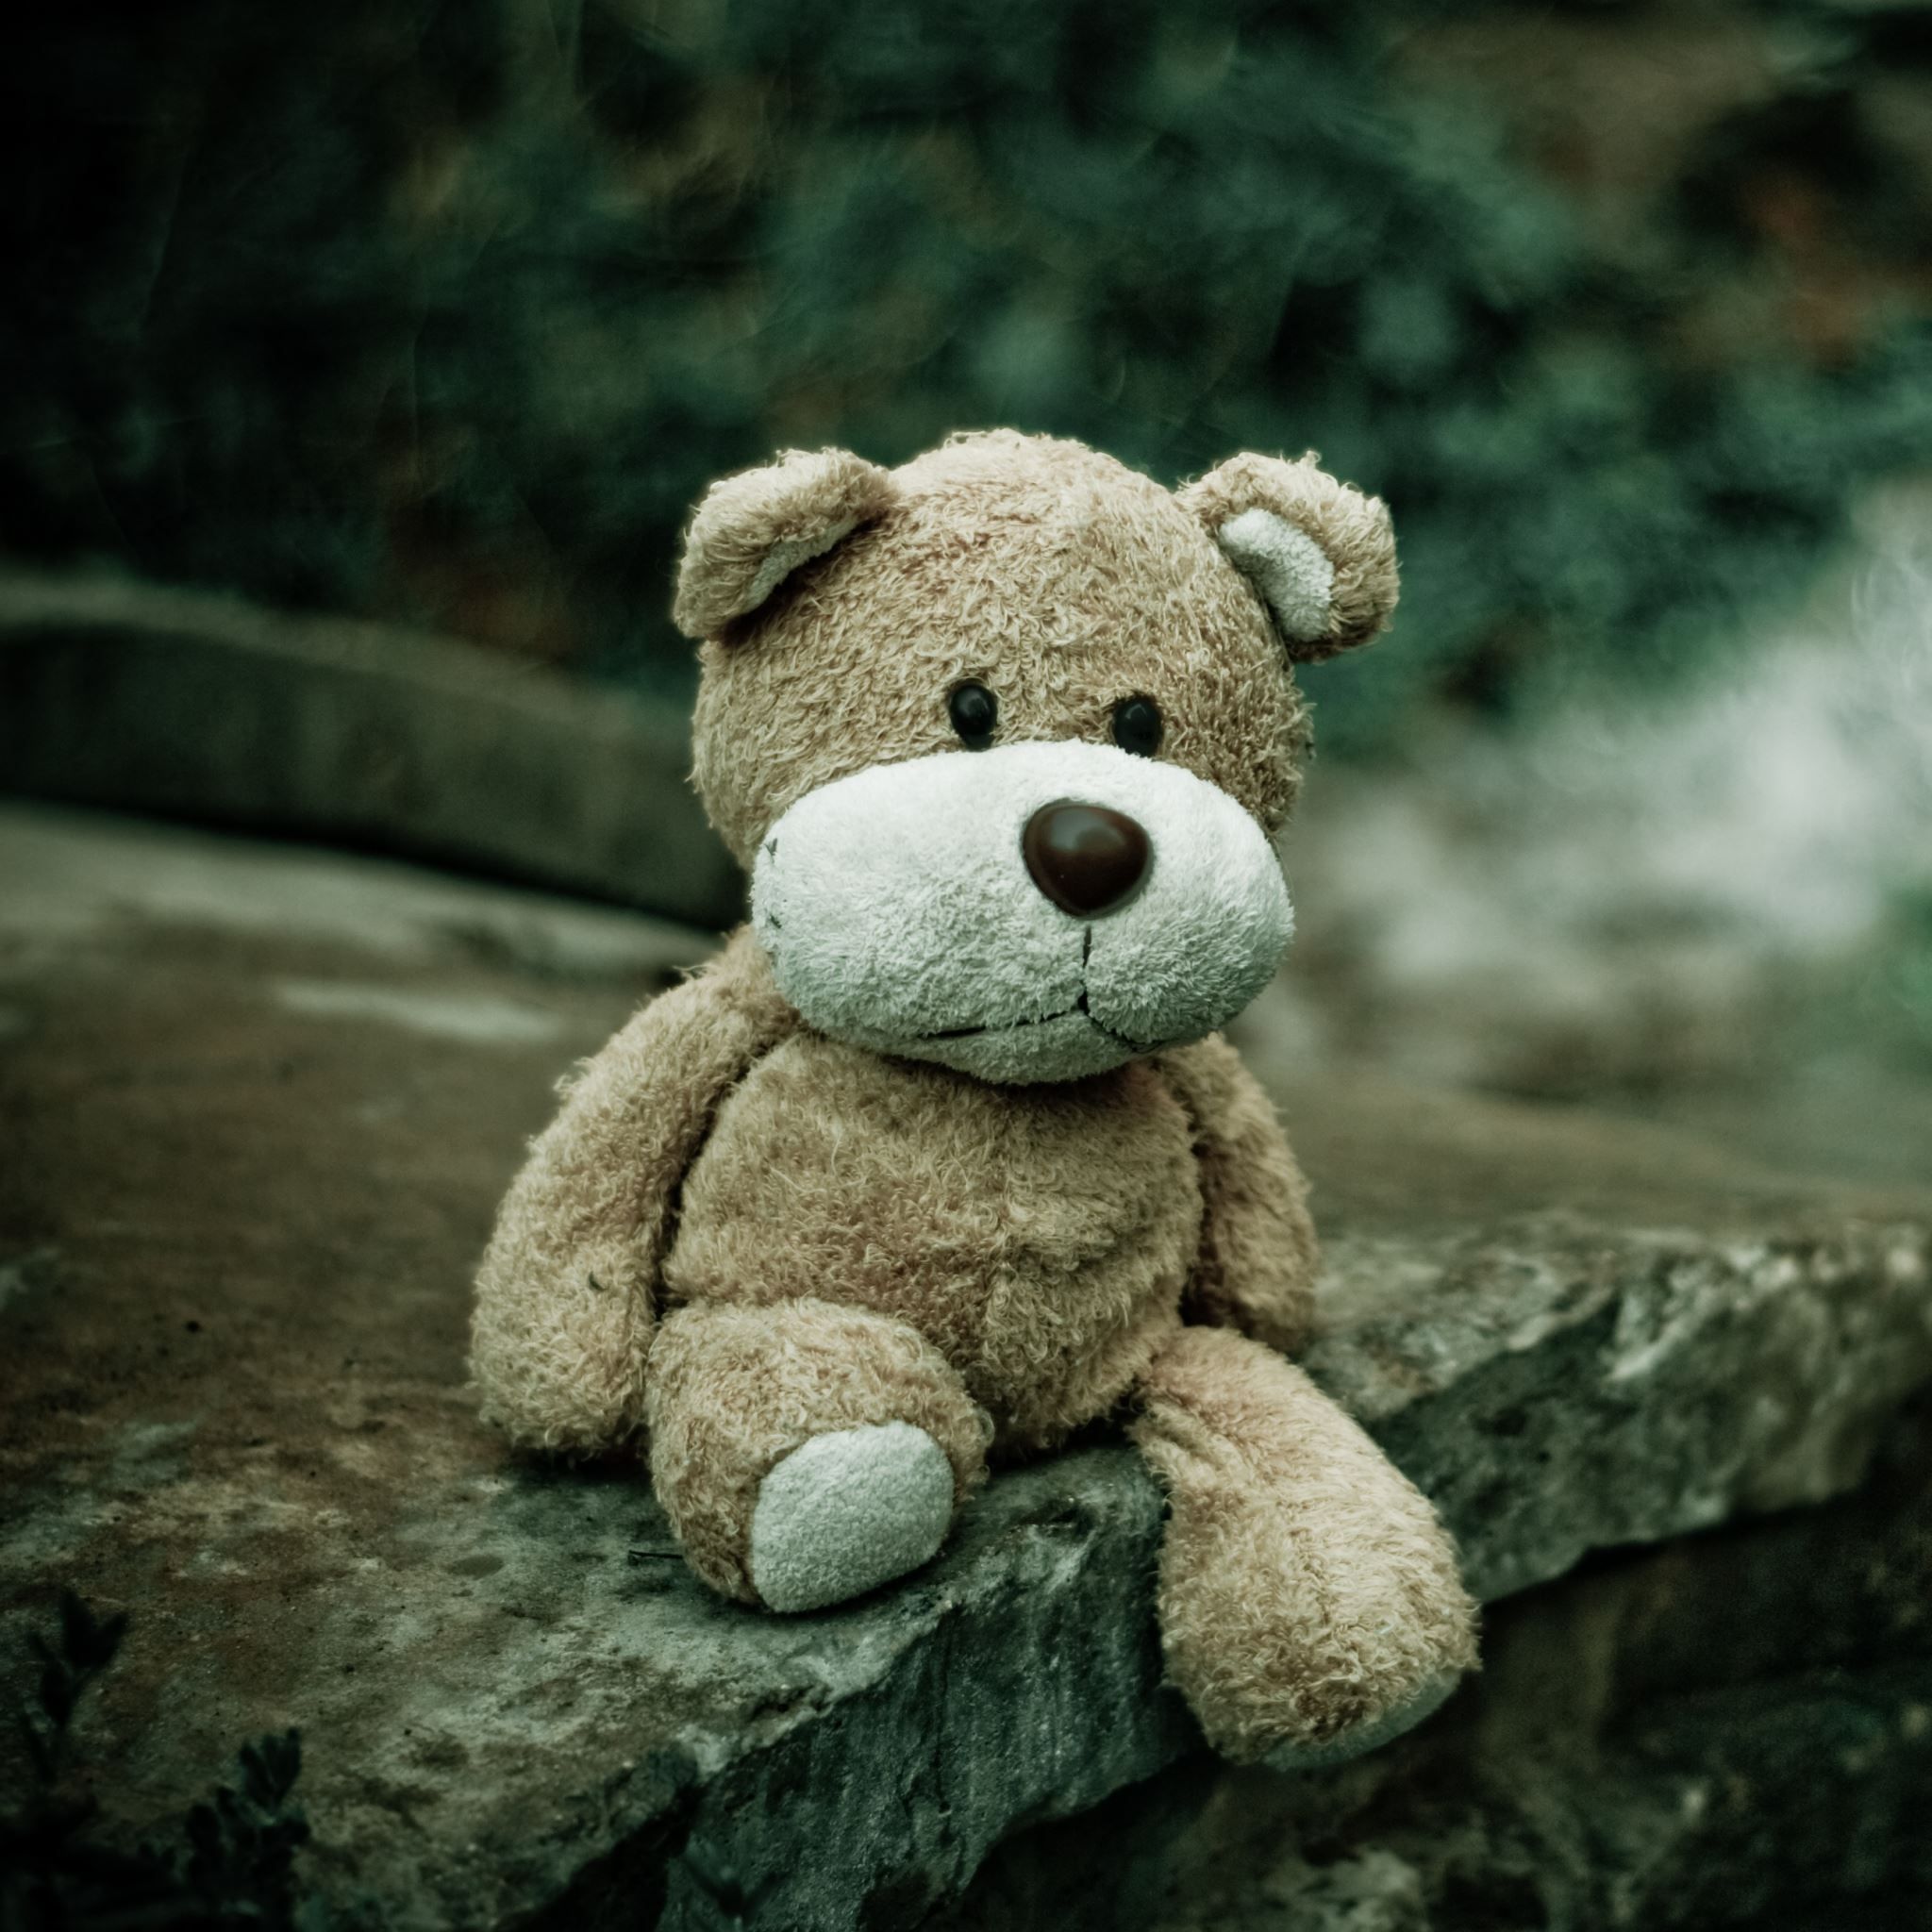 A teddy bear sitting on top of some rocks - Teddy bear